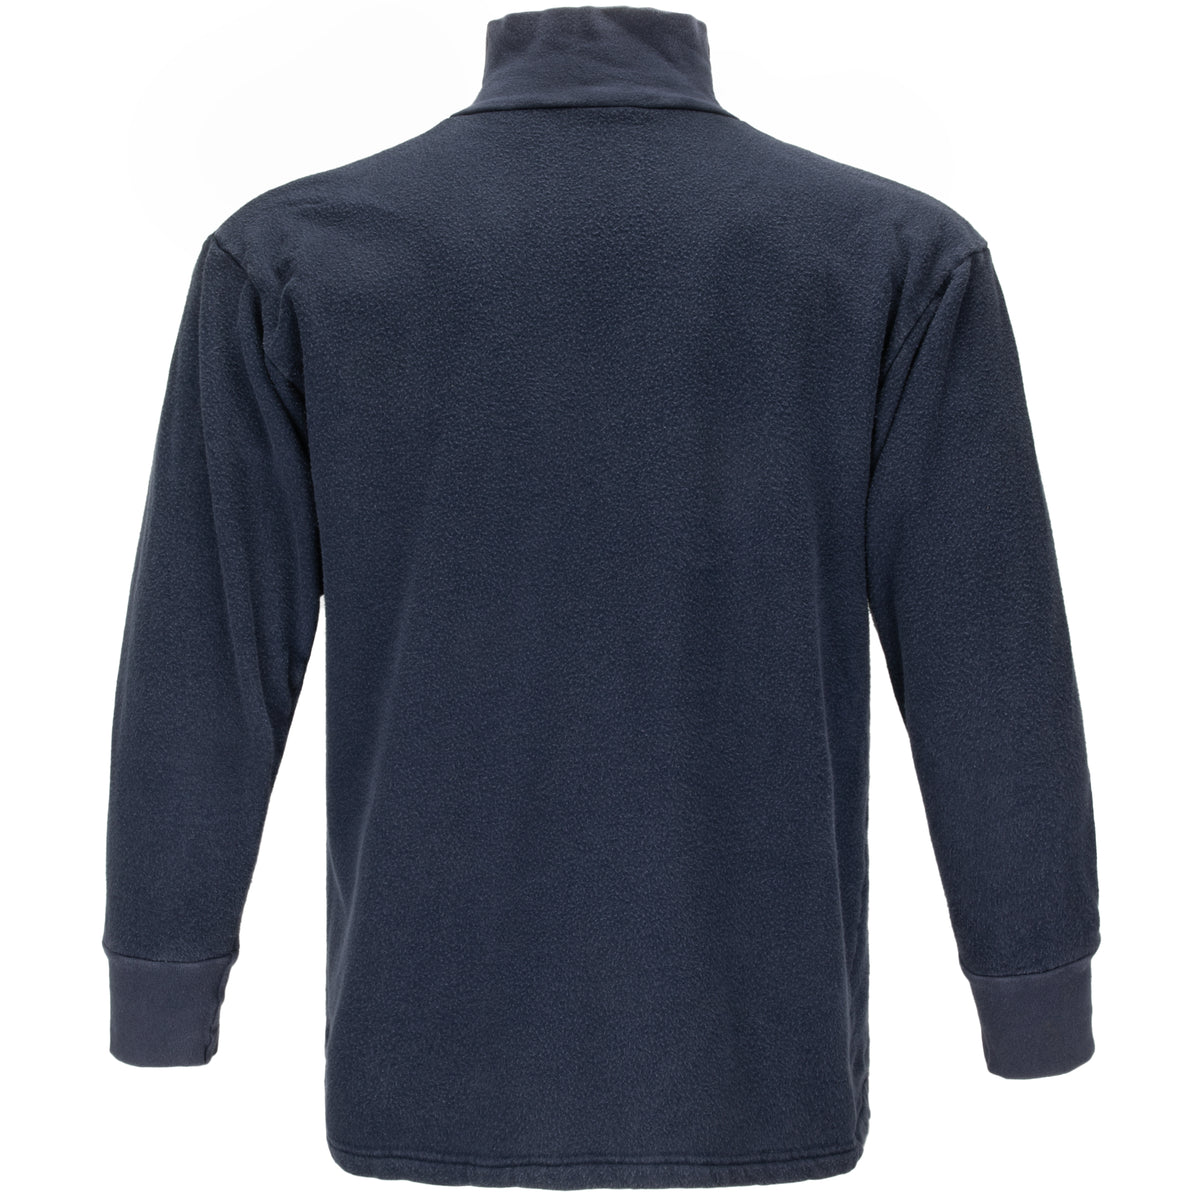 Dutch Army 1/4 Zip Navy Thermal Long Sleeve Shirt